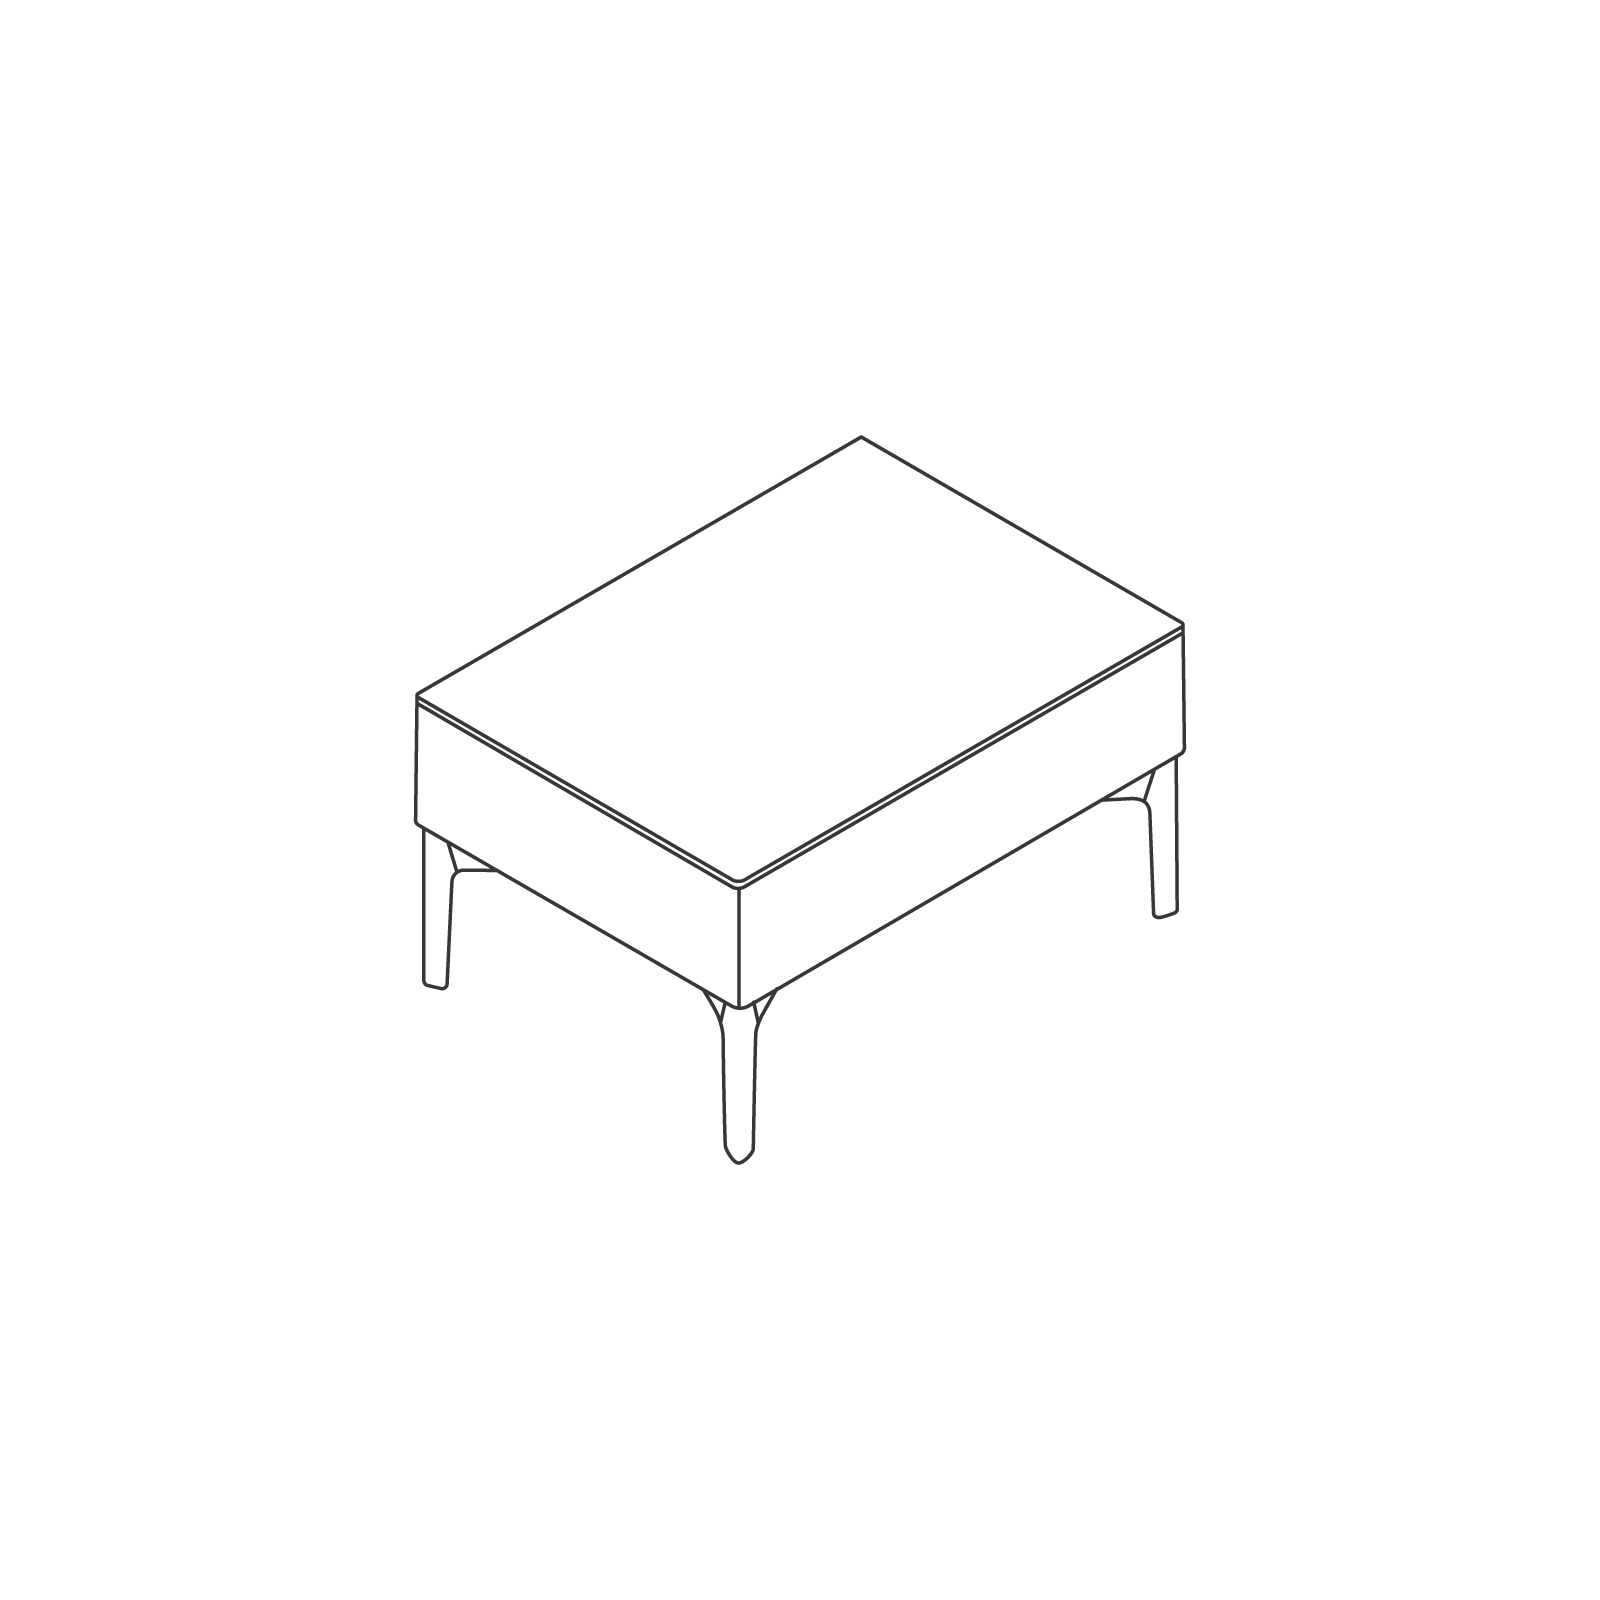 Un dibujo - Sillería modular Symbol – Mesa